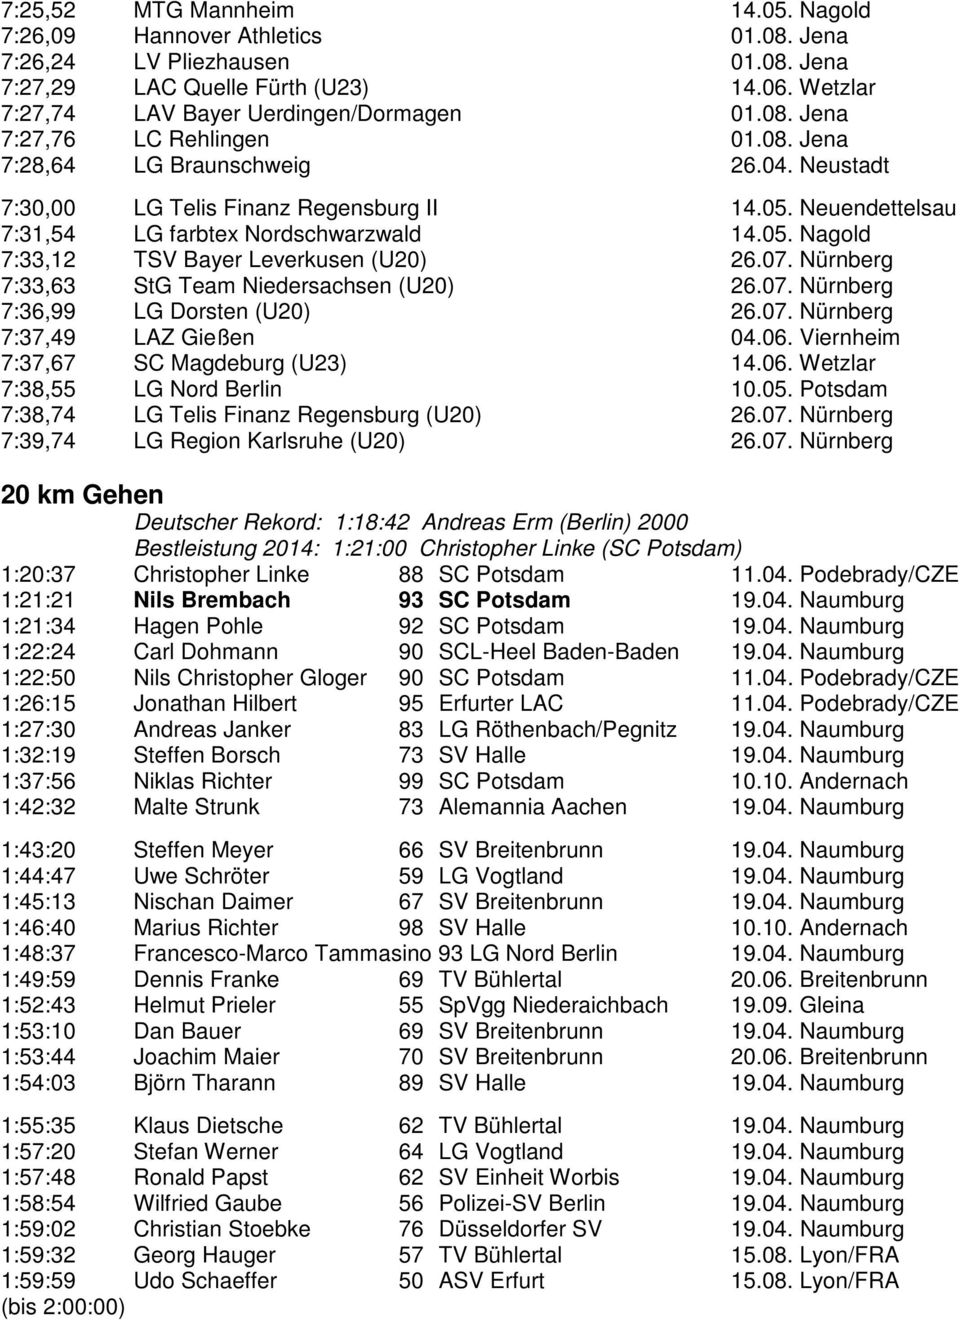 Nürnberg 7:33,63 StG Team Niedersachsen (U20) 26.07. Nürnberg 7:36,99 LG Dorsten (U20) 26.07. Nürnberg 7:37,49 LAZ Gießen 04.06. Viernheim 7:37,67 SC Magdeburg (U23) 14.06. Wetzlar 7:38,55 LG Nord Berlin 10.